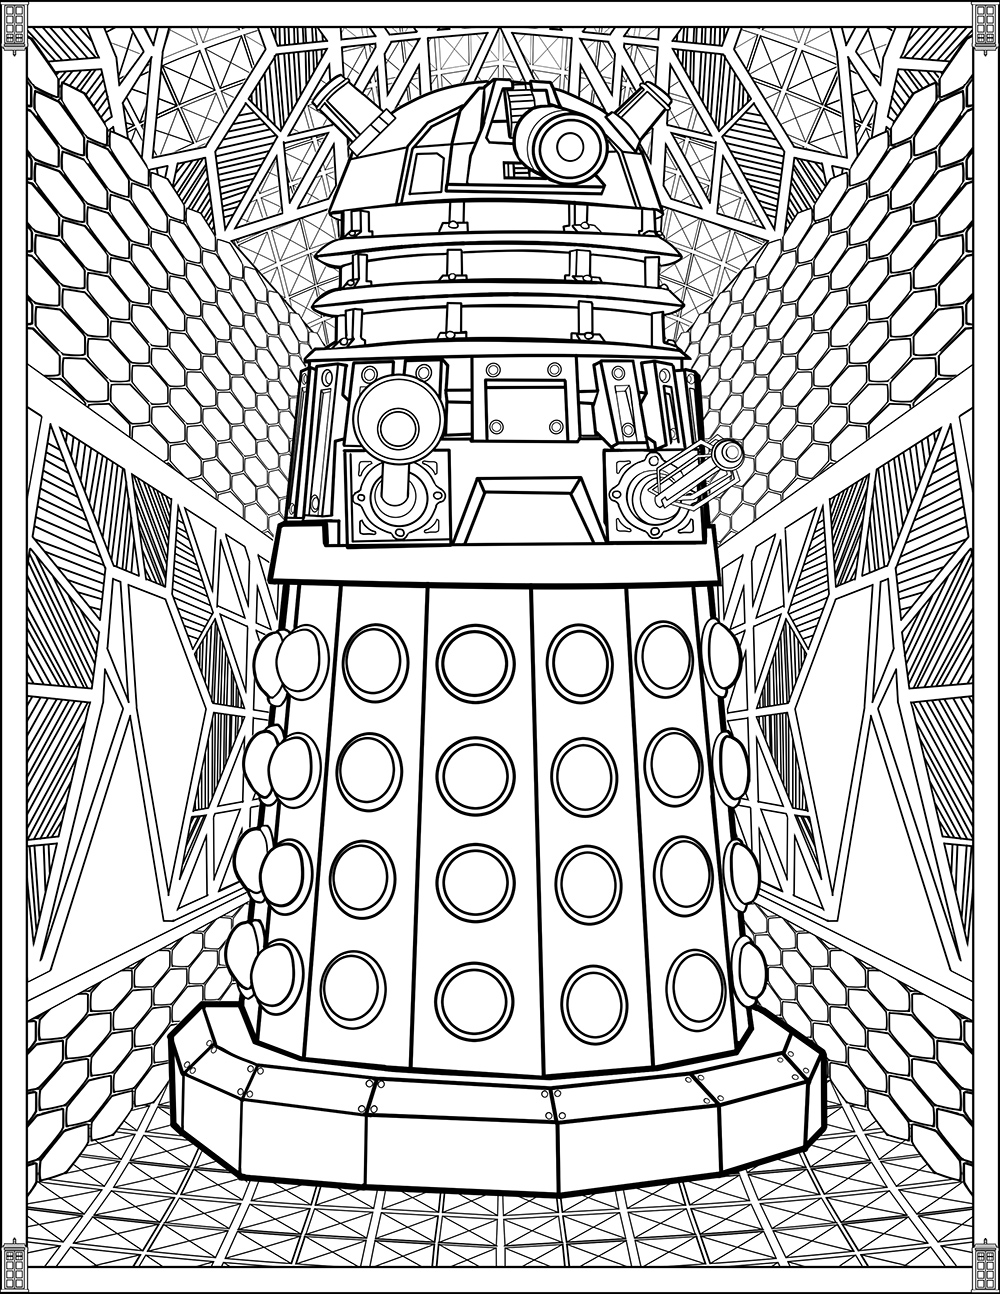 DALEK: Os Daleks conseguem colorir com o seu braço manipulador?, Artista : Brady Johnson   Fonte : fun